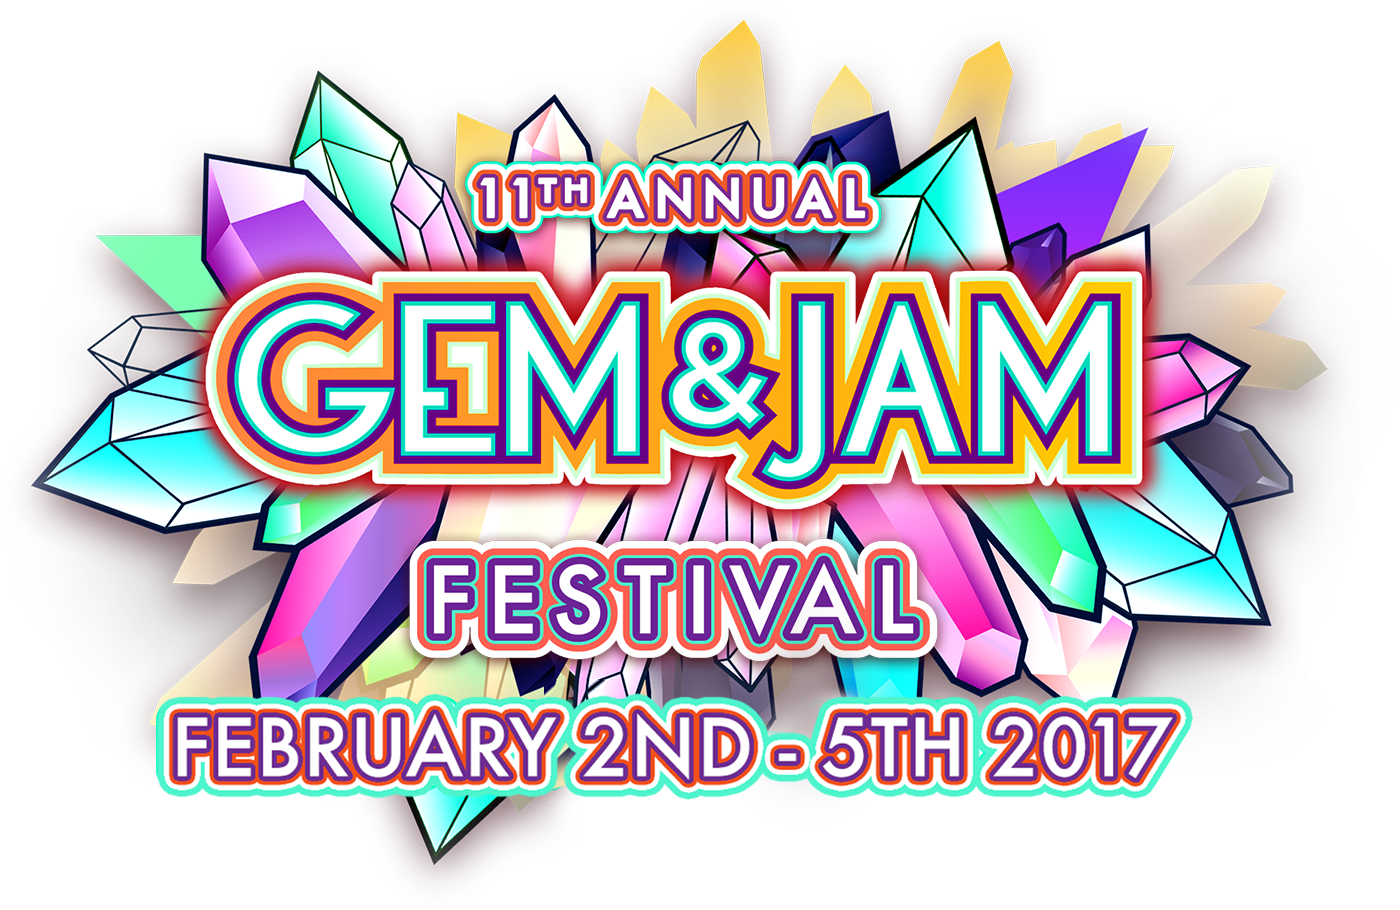 Gem and Jam Festival 2017 logo. Photo by: Gem and Jam Festival